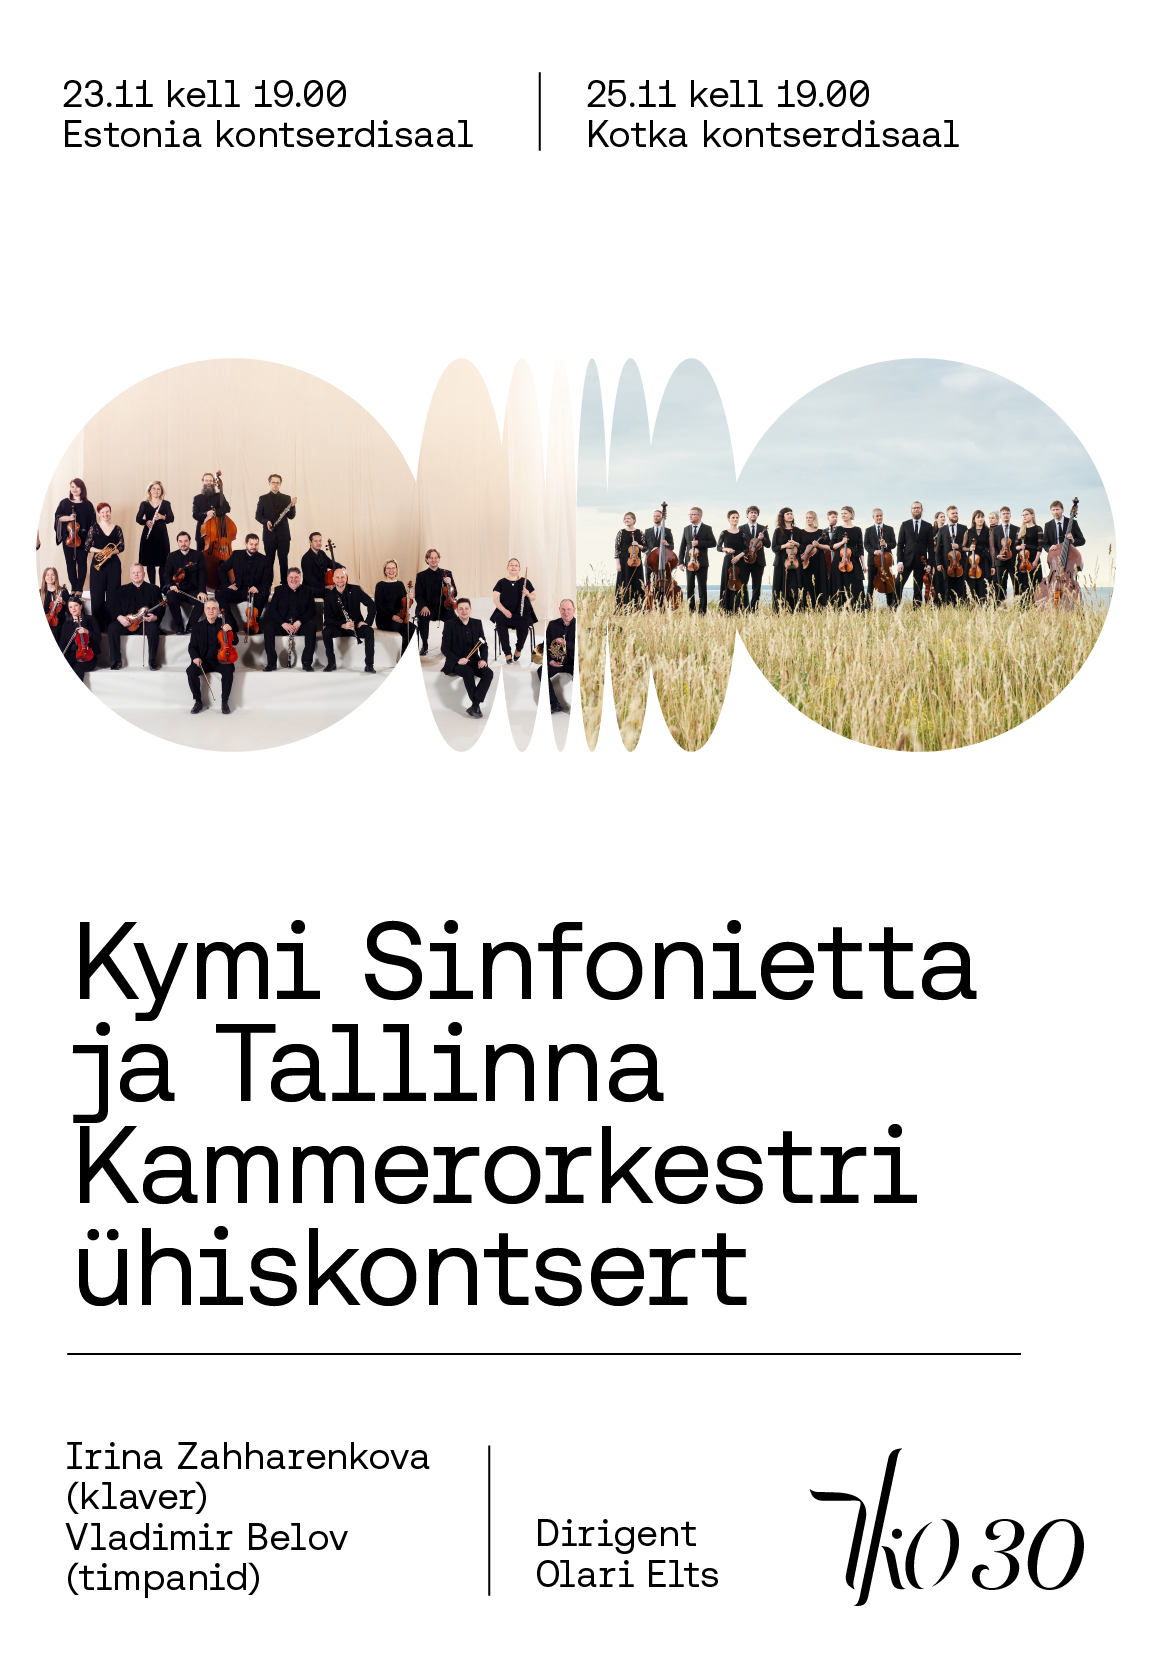 Kymi Sinfonietta ja Tallinna Kammerorkestri ühiskontsert (Tallinn)